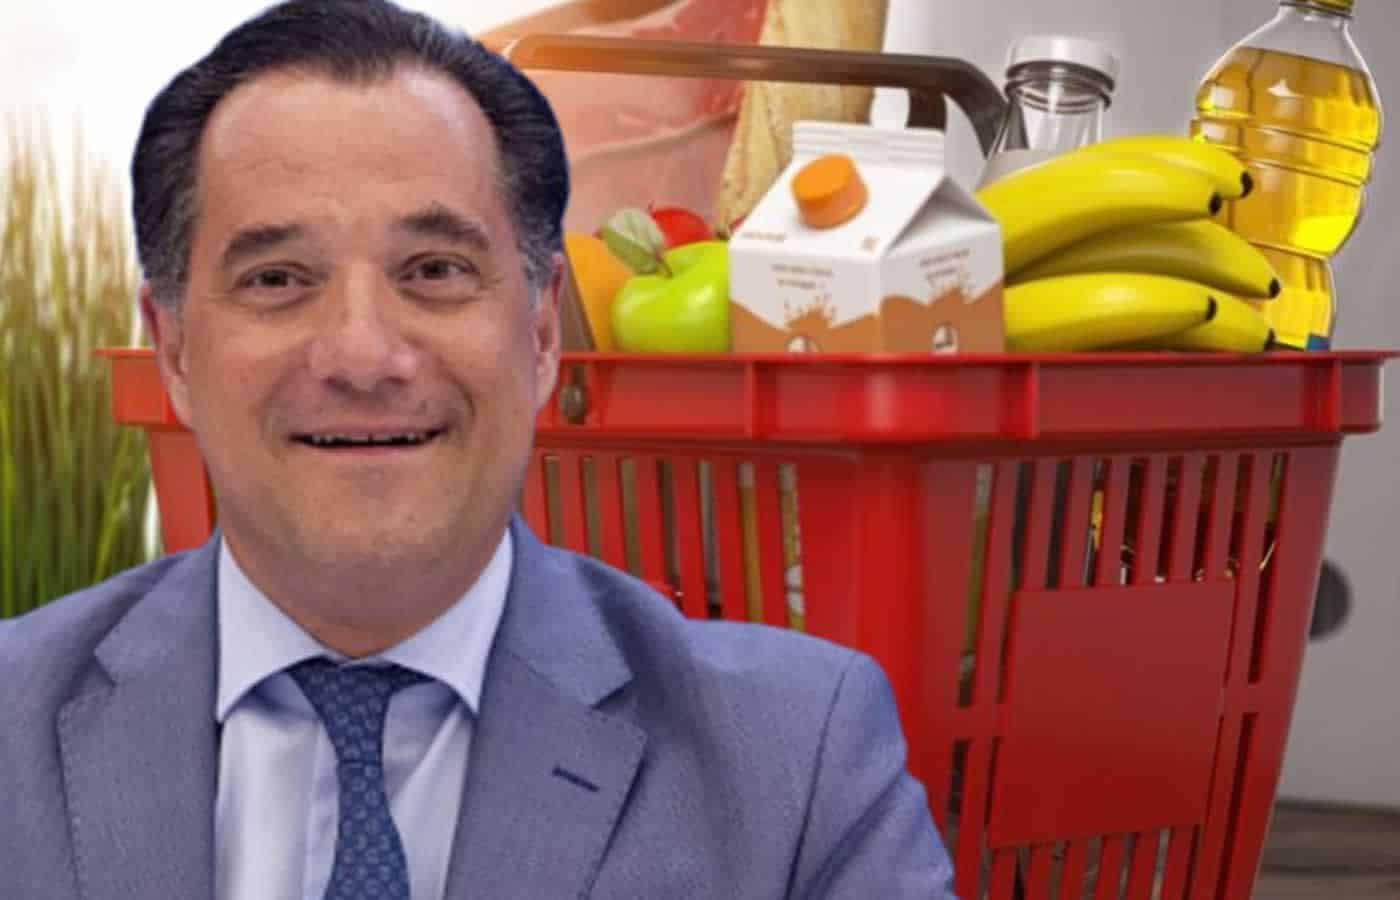 Δίνοντας μεγάλη δημοσιότητα στο θέμα ο Υπουργός Ανάπτυξης Άδωνις Γεωργιάδης, απο το πρωί κάνει βόλτες στα super market για να διαφημίσει